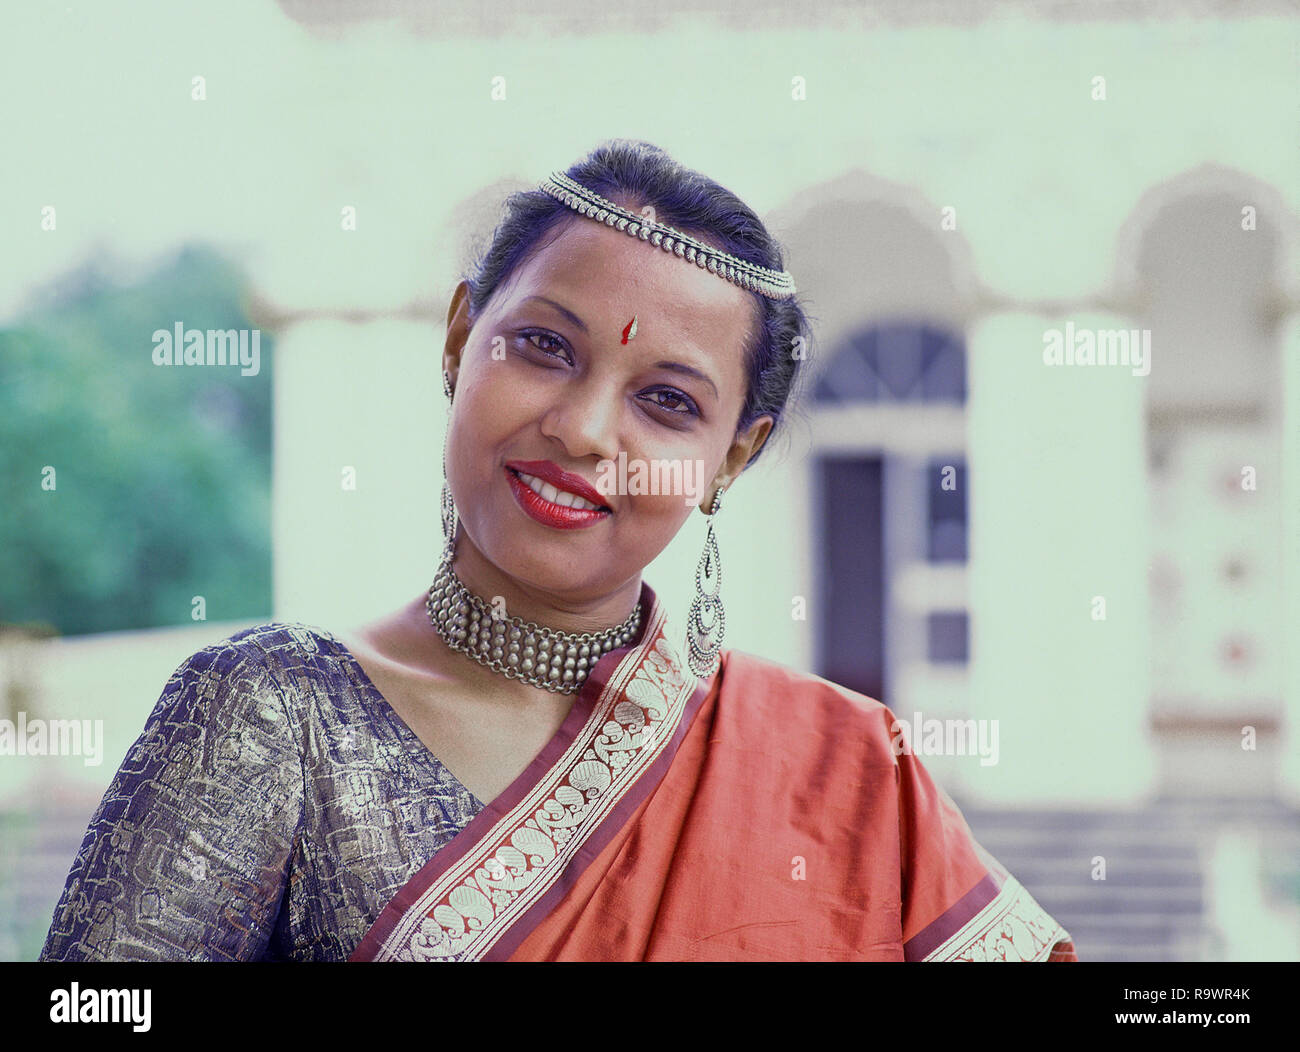 Jeune femme portant sari traditionnel mauricien avec over Shoulder pallu, collier, boucles d'décoratif et bandeau, Maurice, océan Indien Banque D'Images